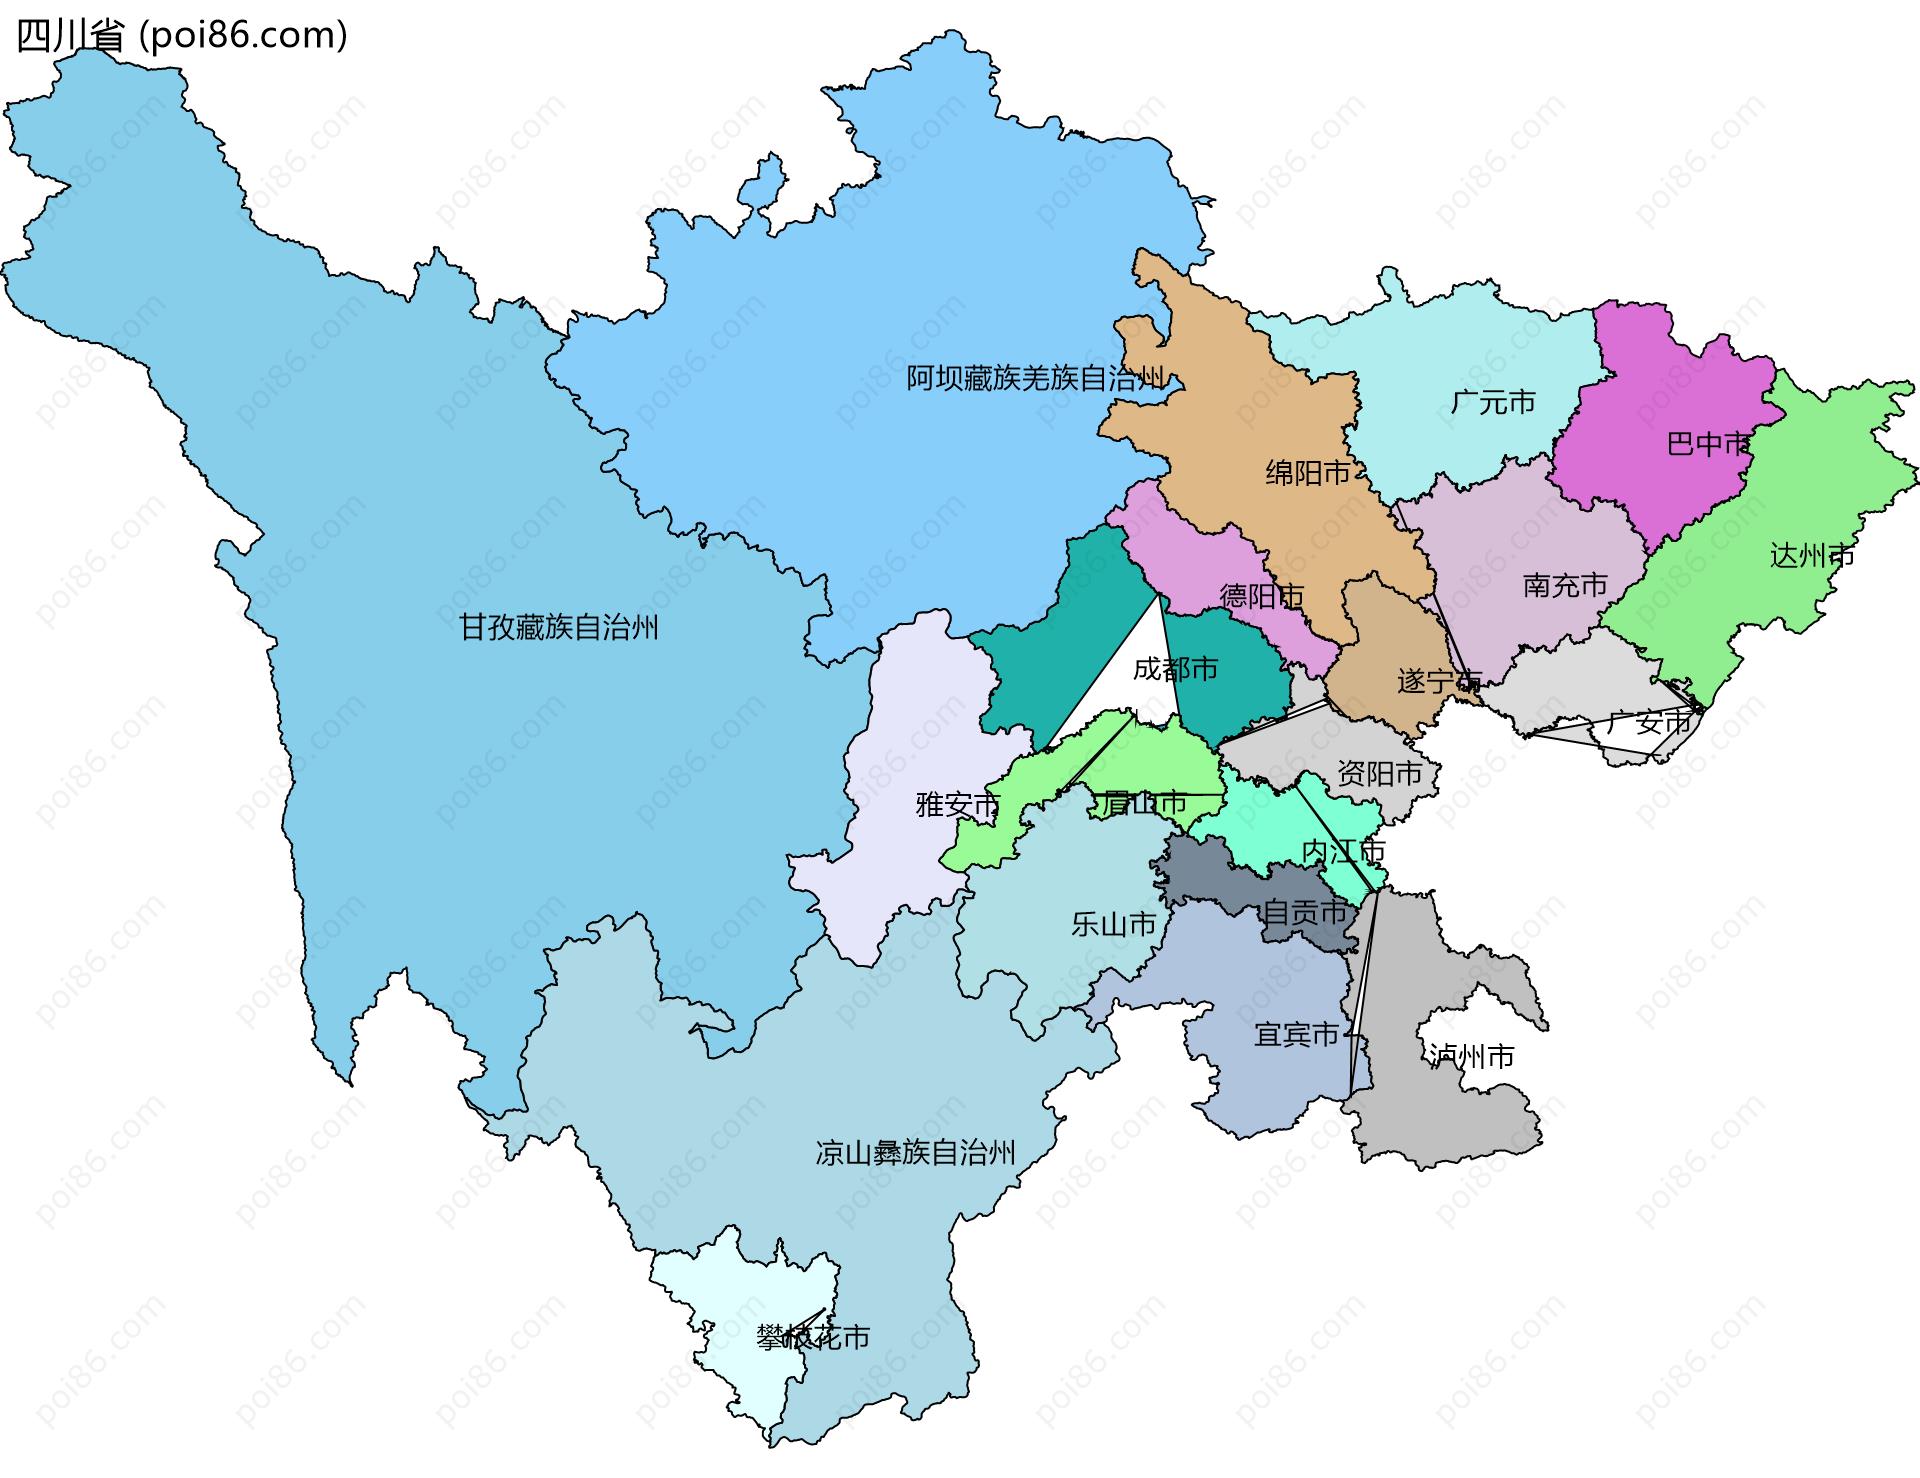 四川省边界地图